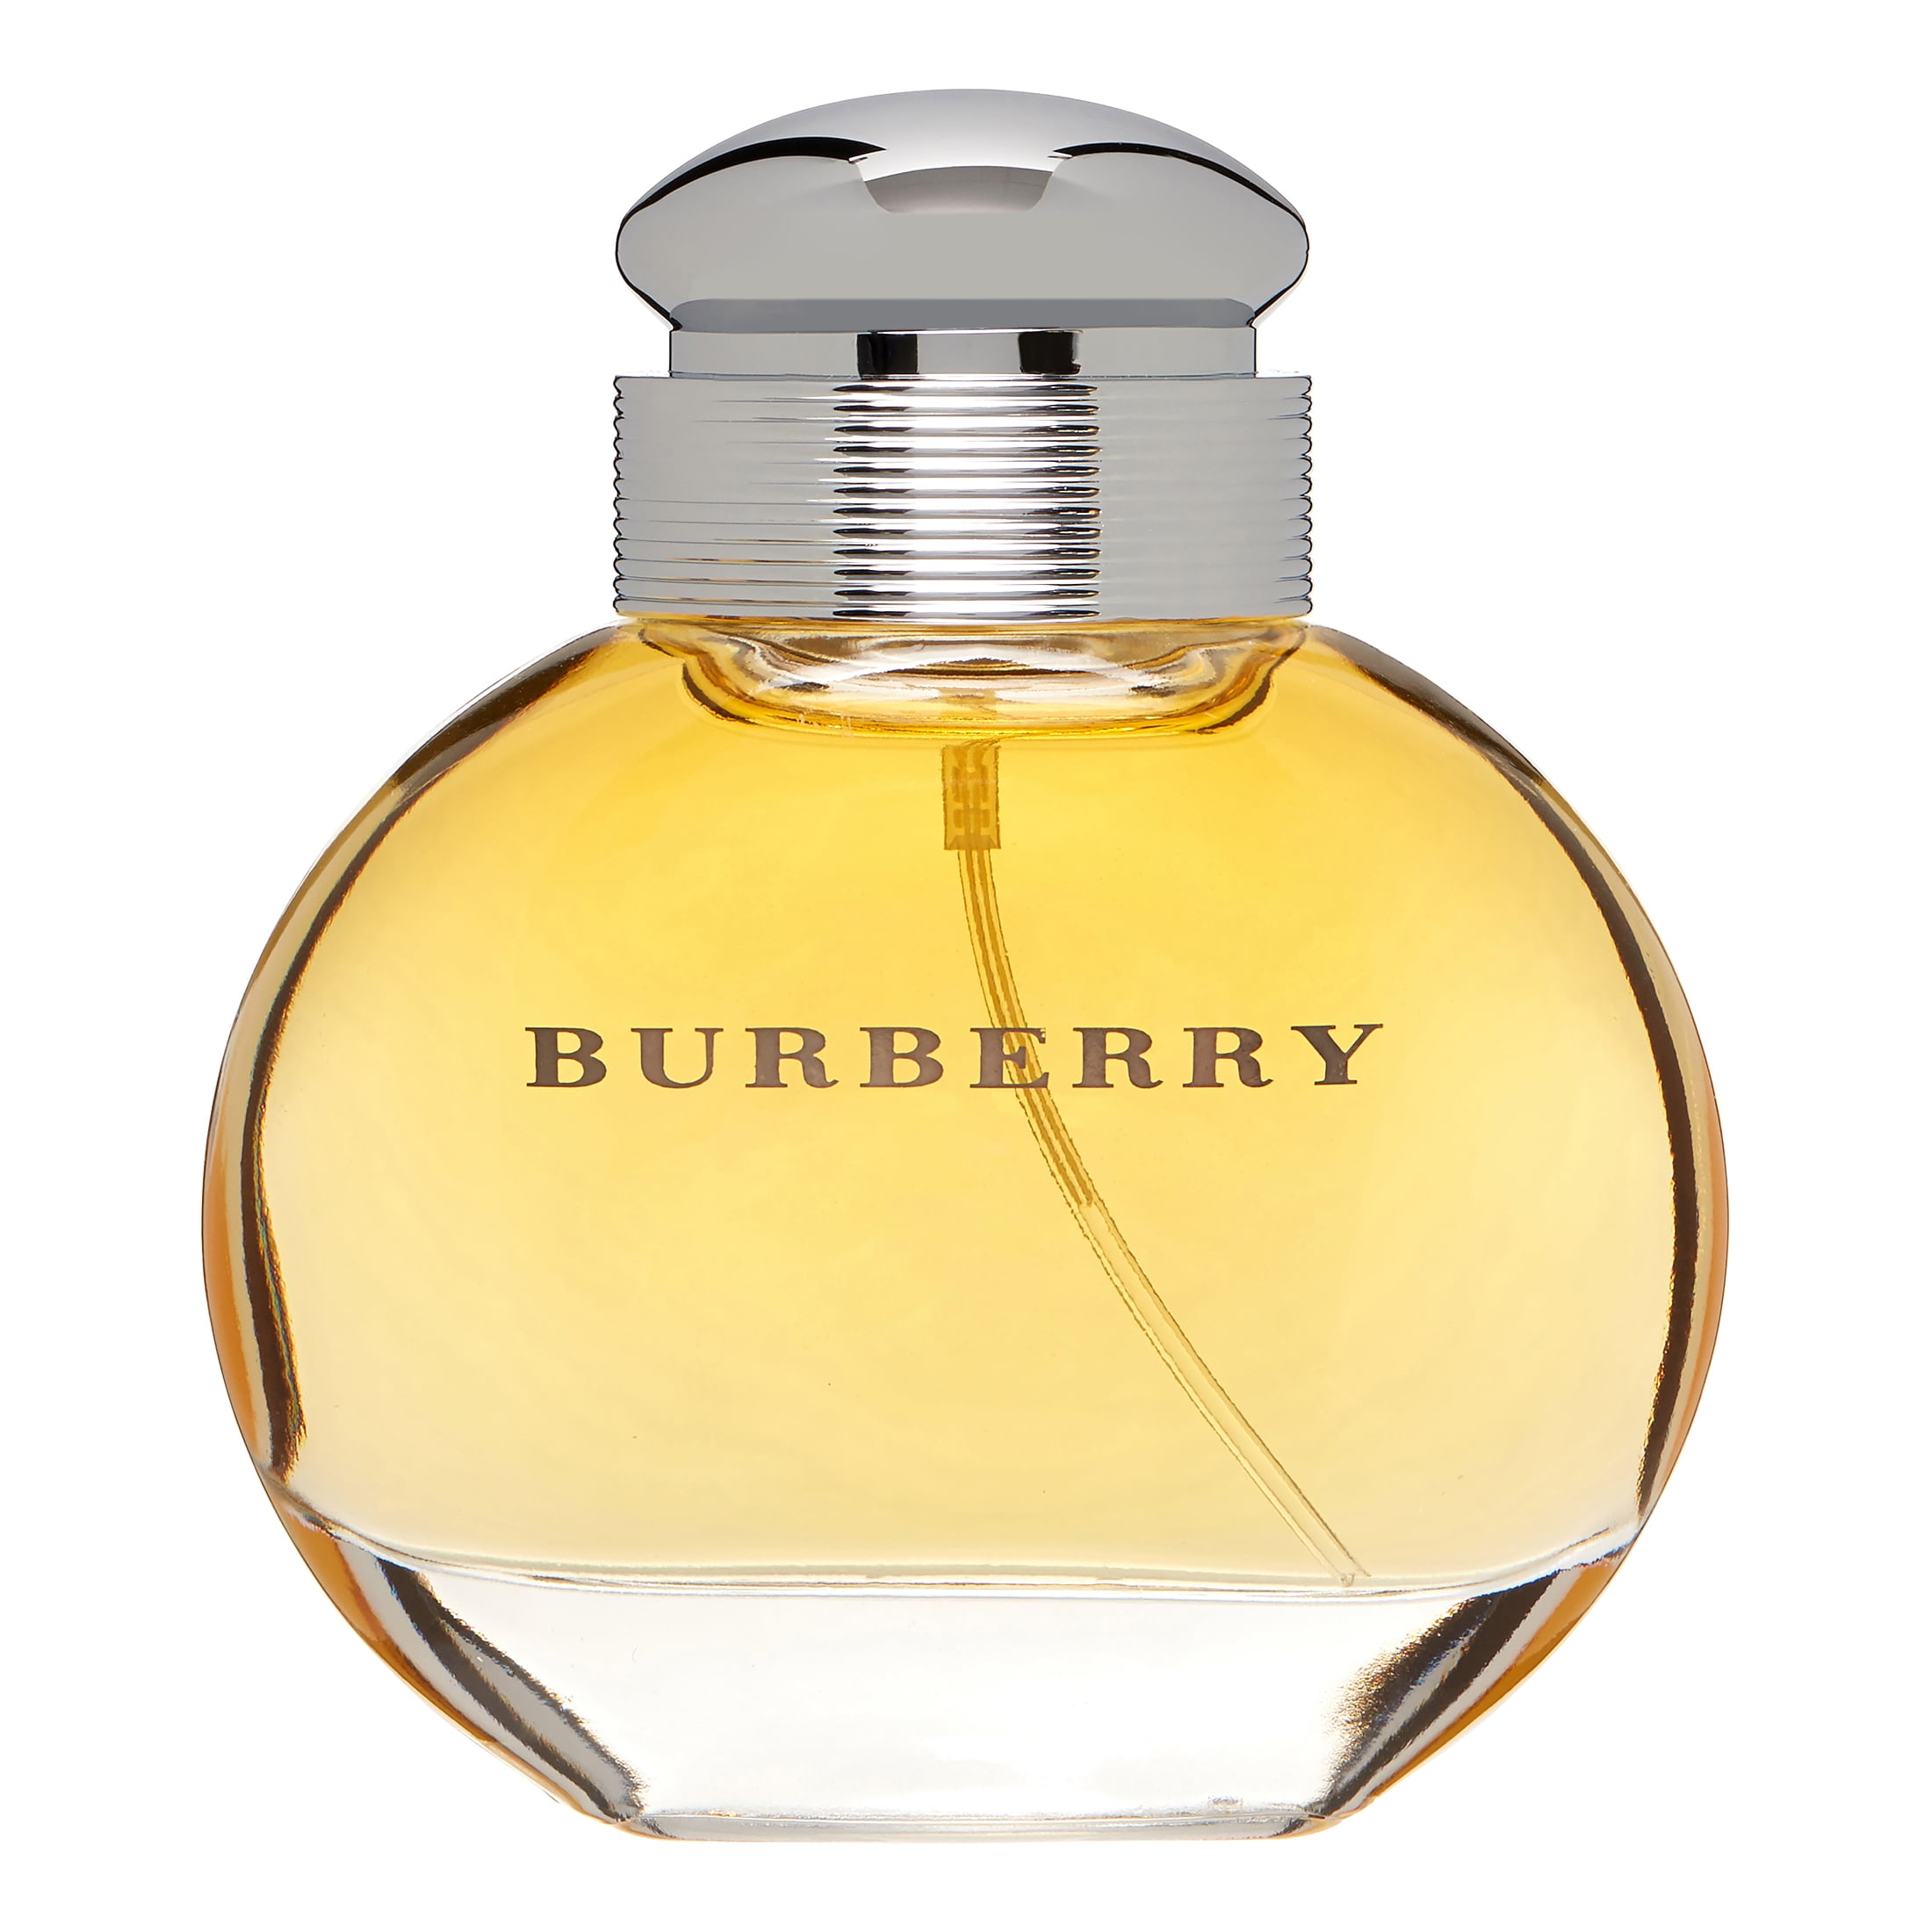 Burberry Eau de Parfum, Perfume for Women, 1.7 oz